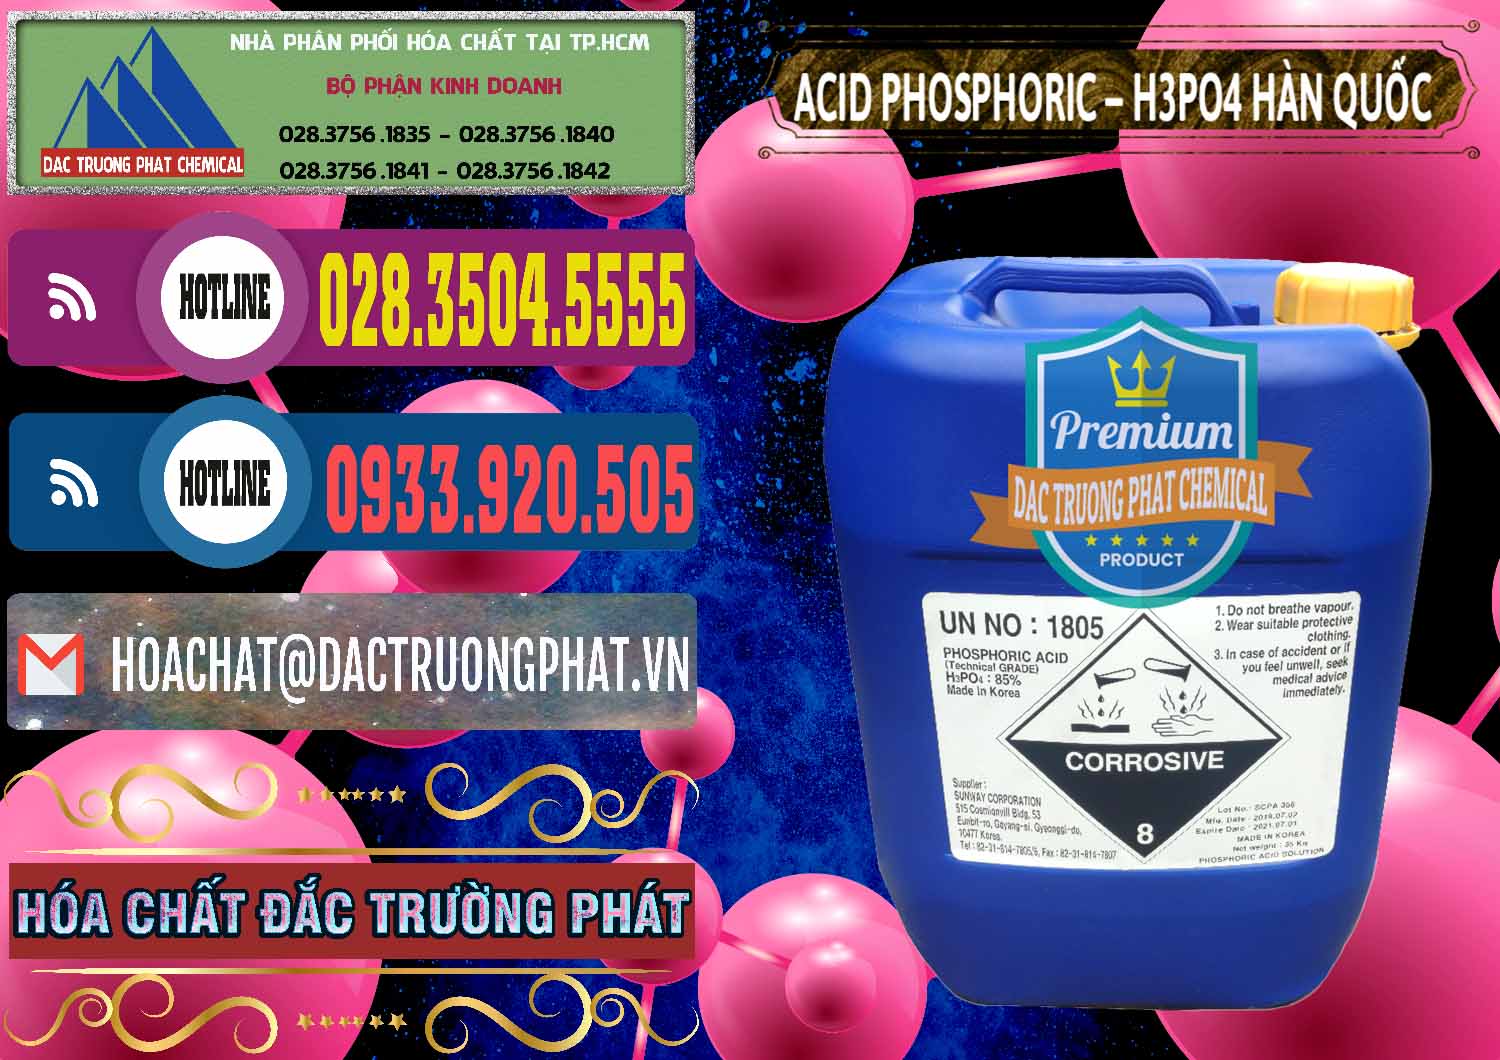 Chuyên bán ( phân phối ) Acid Phosphoric – H3PO4 85% Can Xanh Hàn Quốc Korea - 0016 - Đơn vị chuyên bán _ cung cấp hóa chất tại TP.HCM - muabanhoachat.com.vn